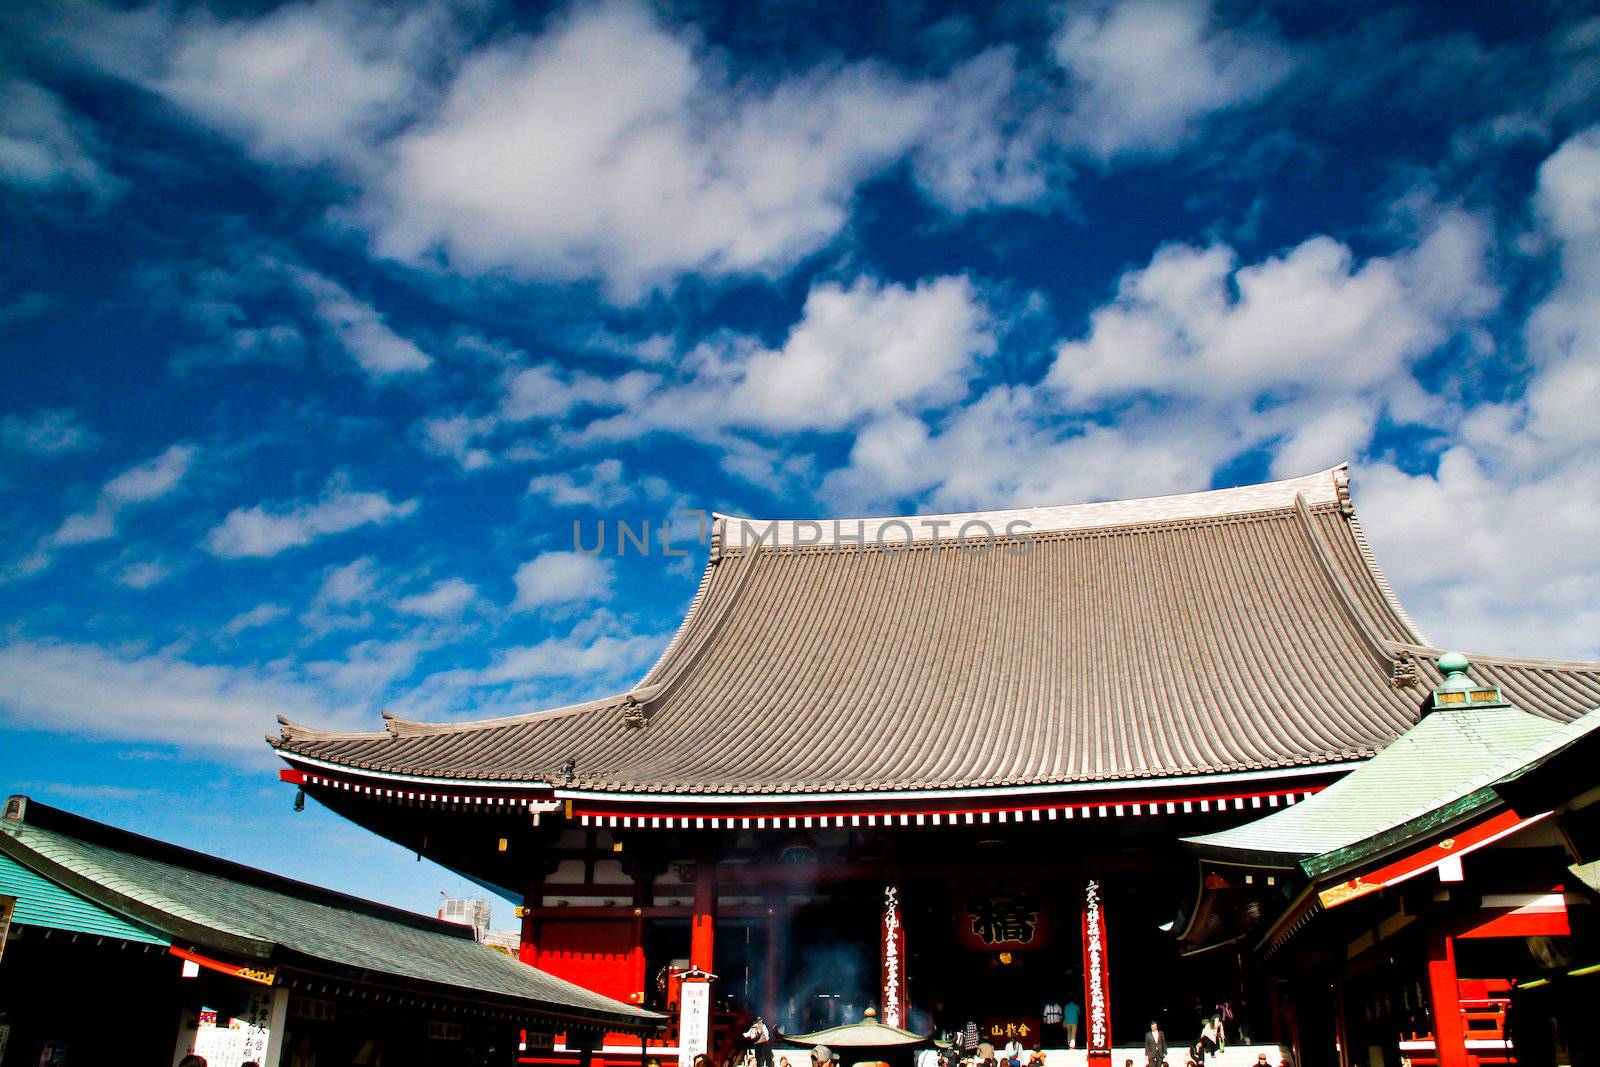 Shrine asakusa in Japan by gjeerawut